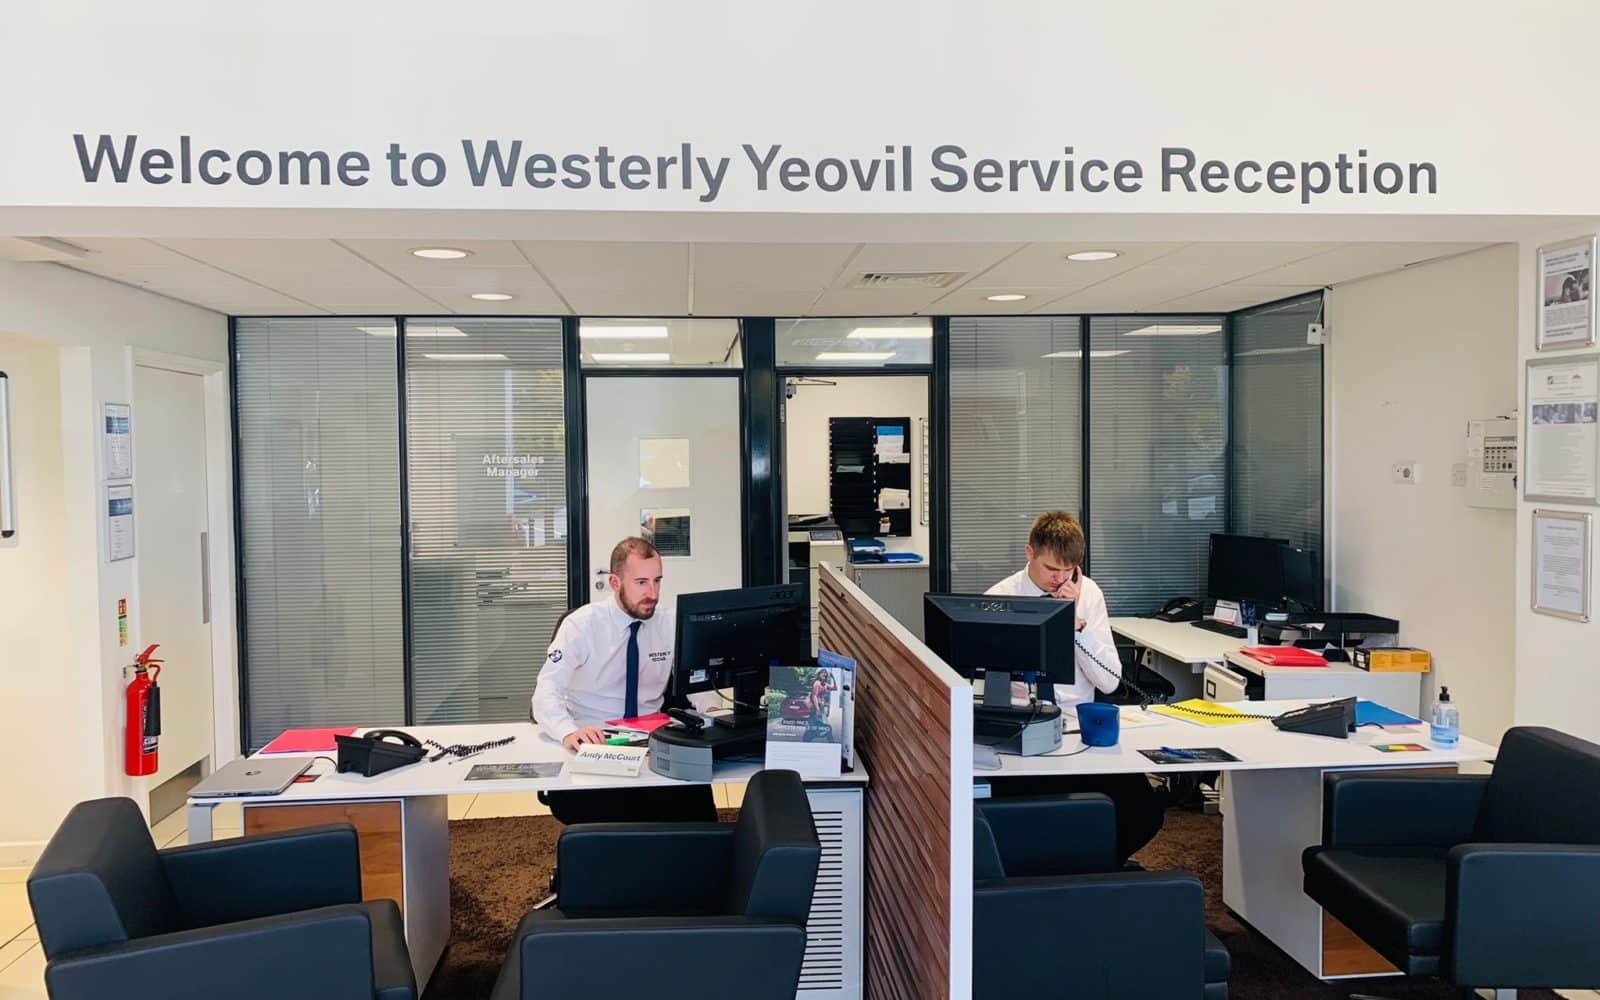 Westerly Yeovil service reception